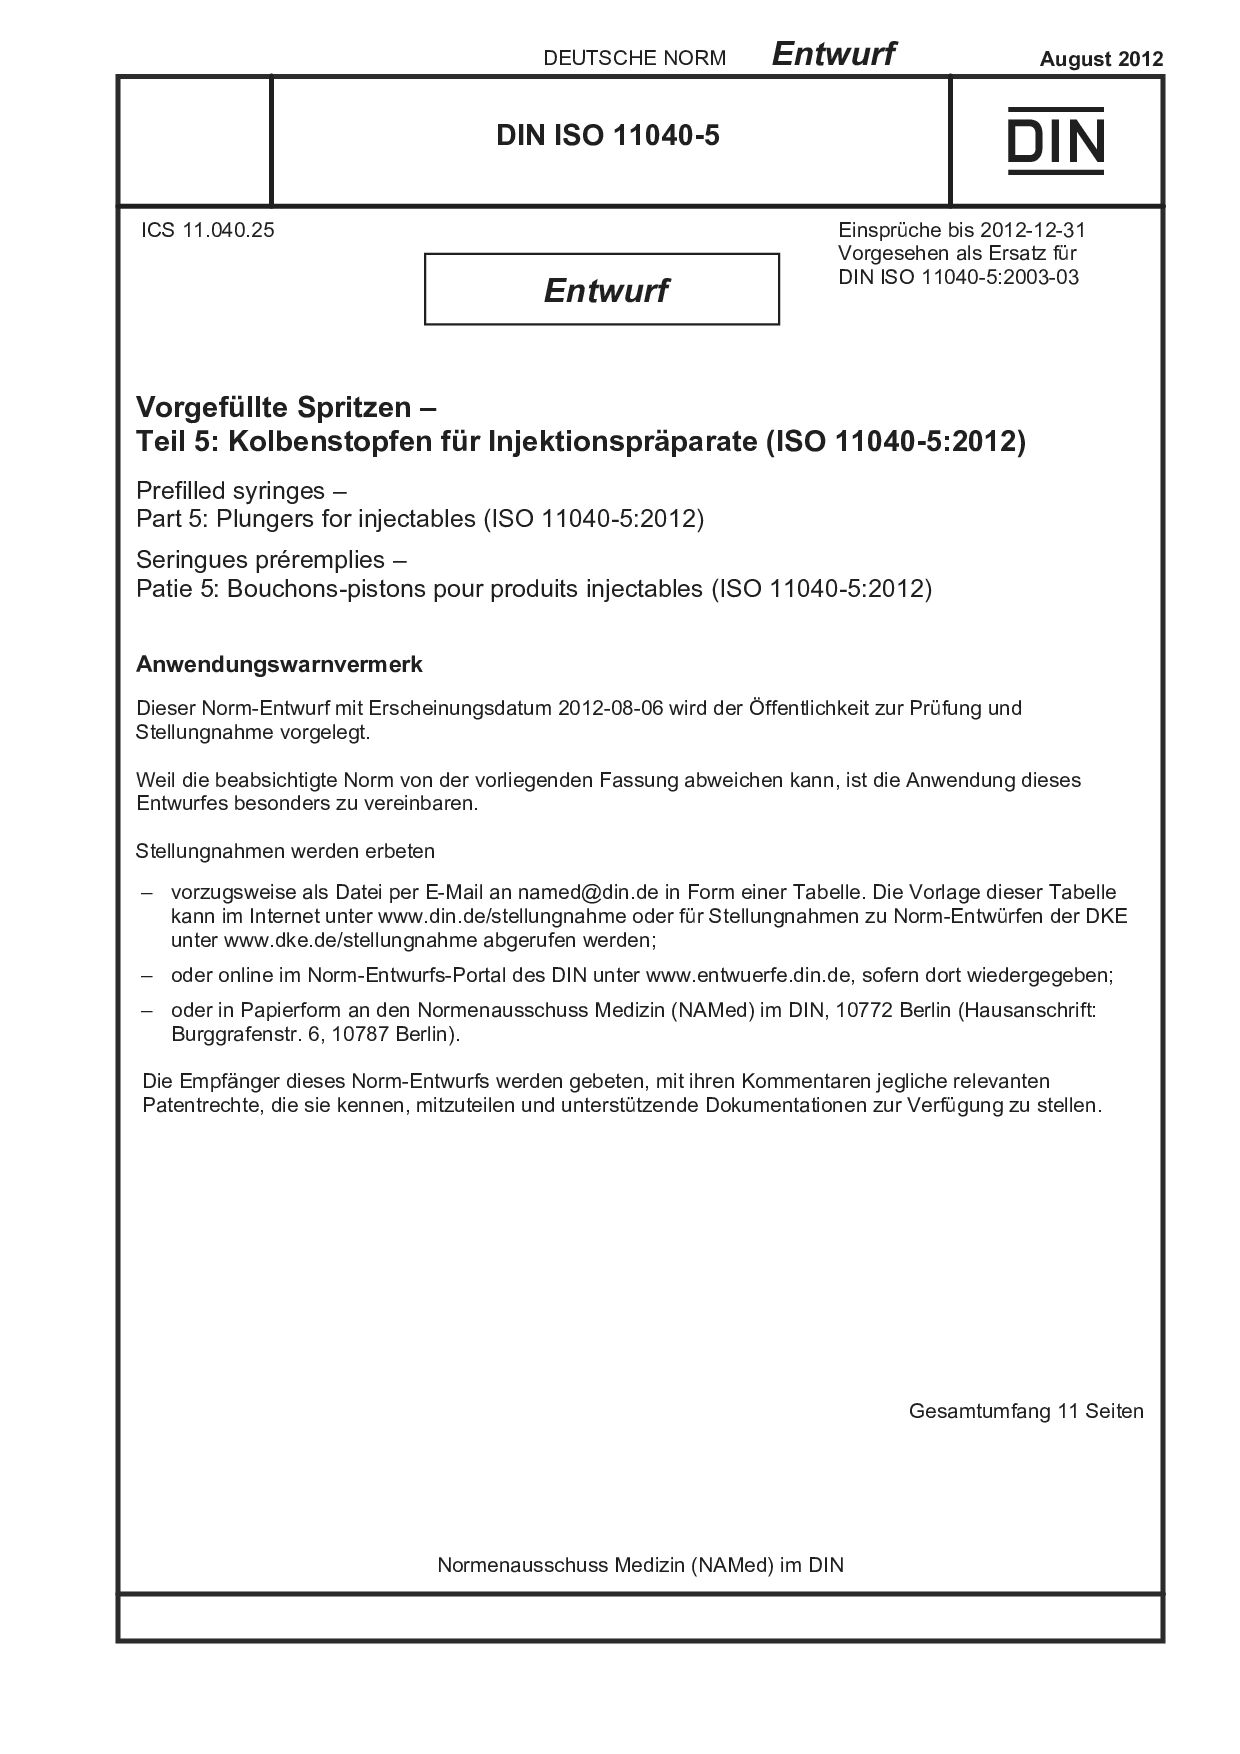 DIN ISO 11040-5 E:2012-08